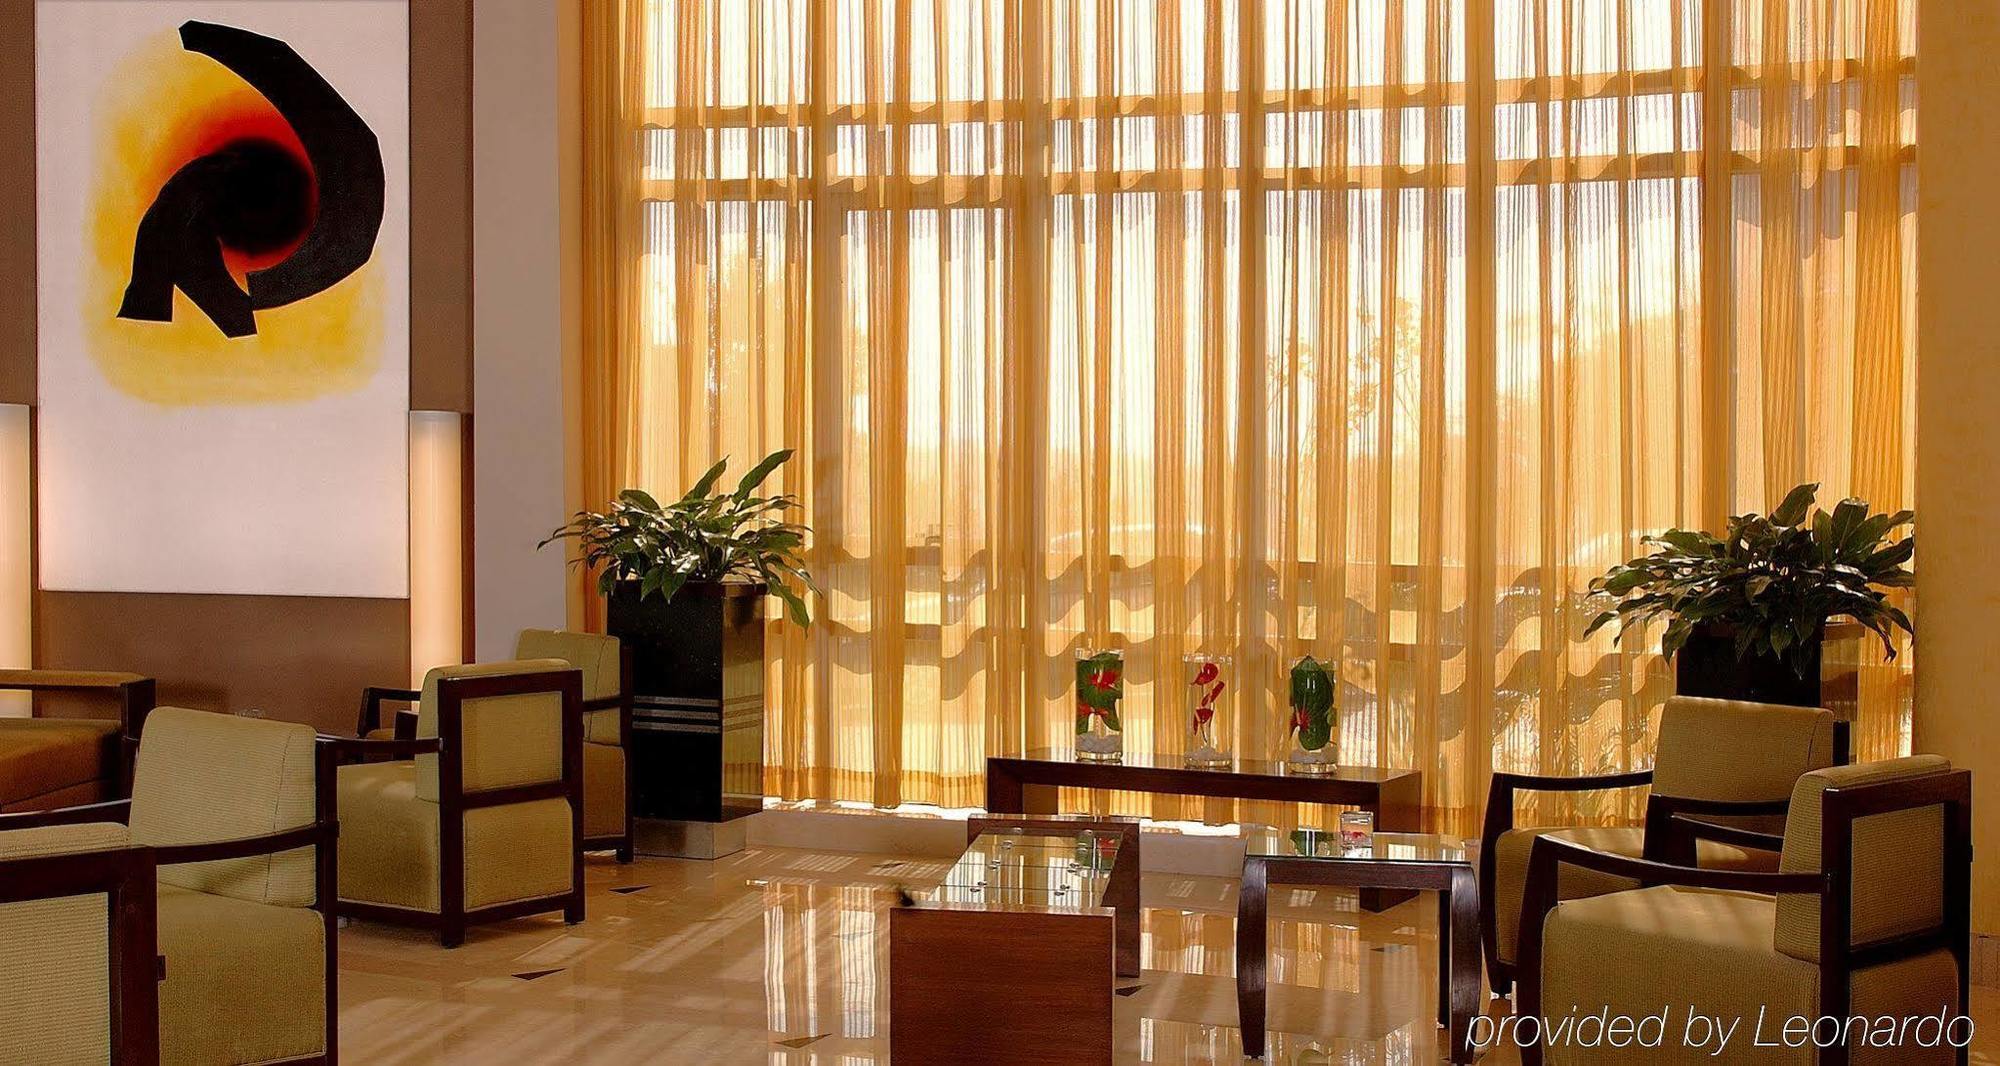 Fortune Select Global, Gurugram - Member Itc'S Hotel Group Gurgaon Dalaman gambar